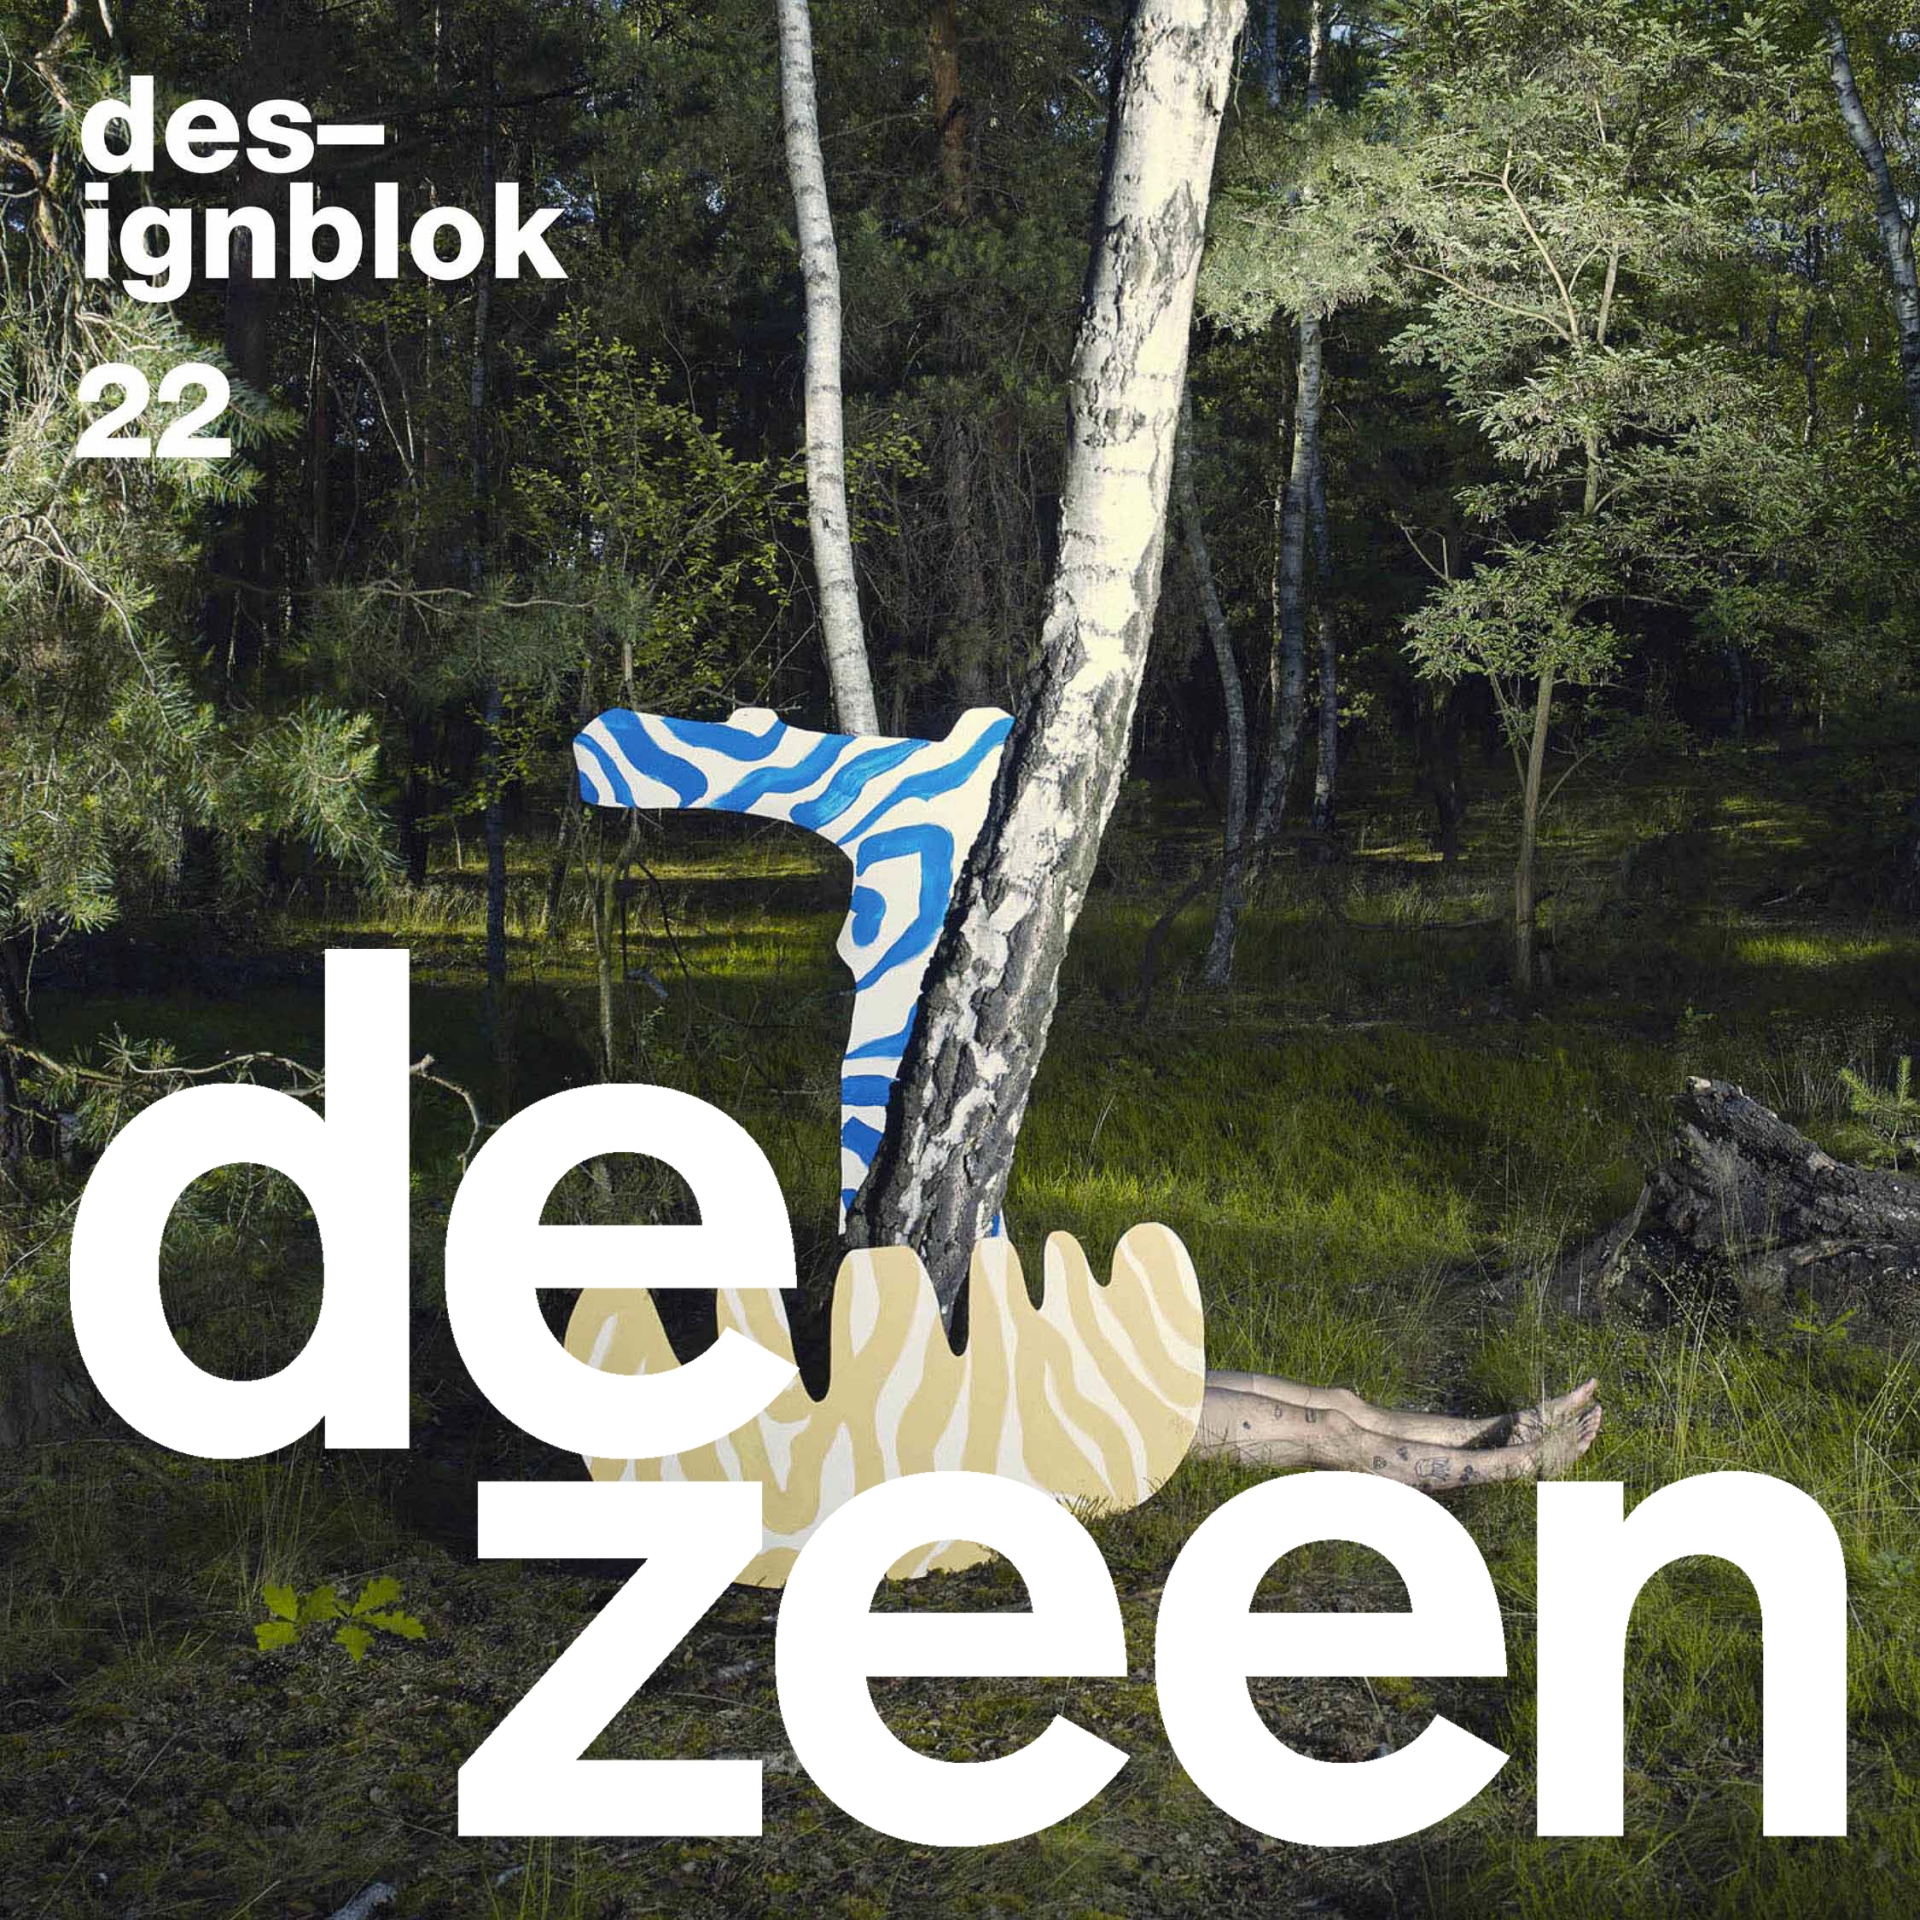 Dezeen is the new main media partner of Designblok